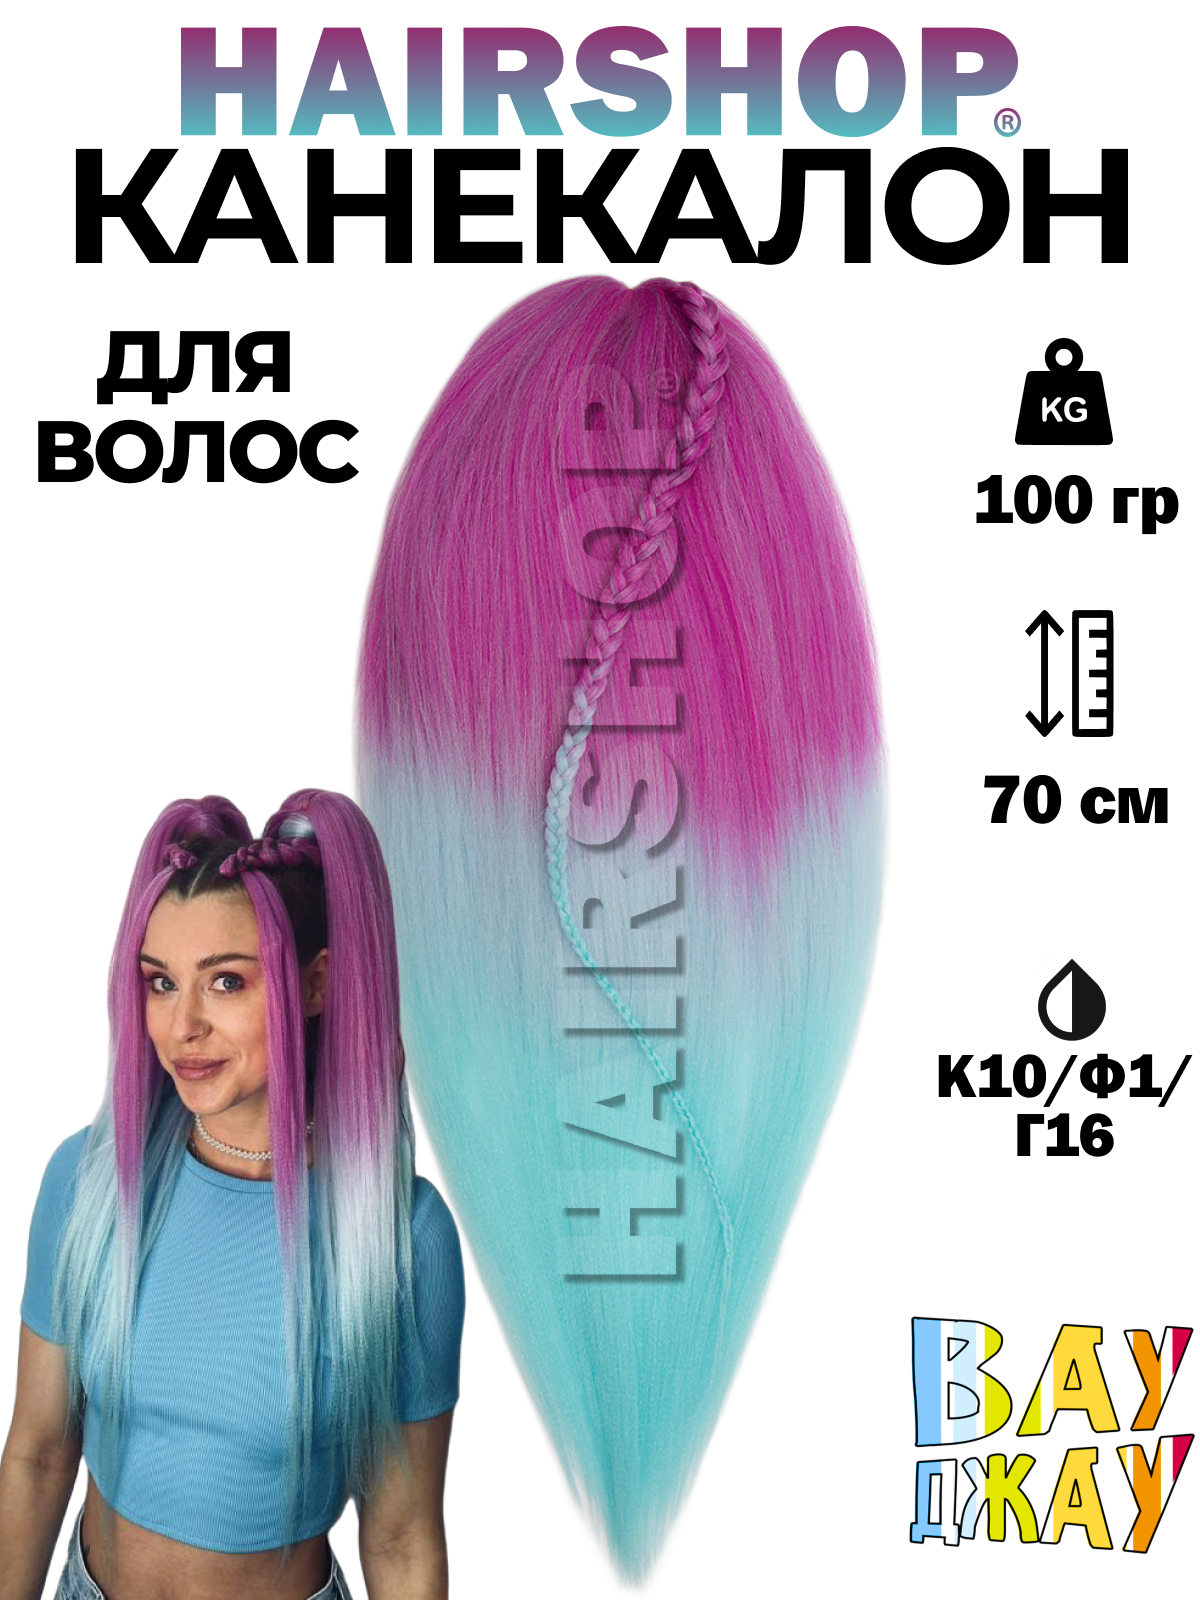 Канекалон HAIRSHOP Вау Джау К10-Ф1-Г16 1,3м 100г Розовый, Нежно-фиолетовый и голубой канекалон hairshop вау джау 99 г1 г16 1 3м 100г светло серый голубой и светло голубой